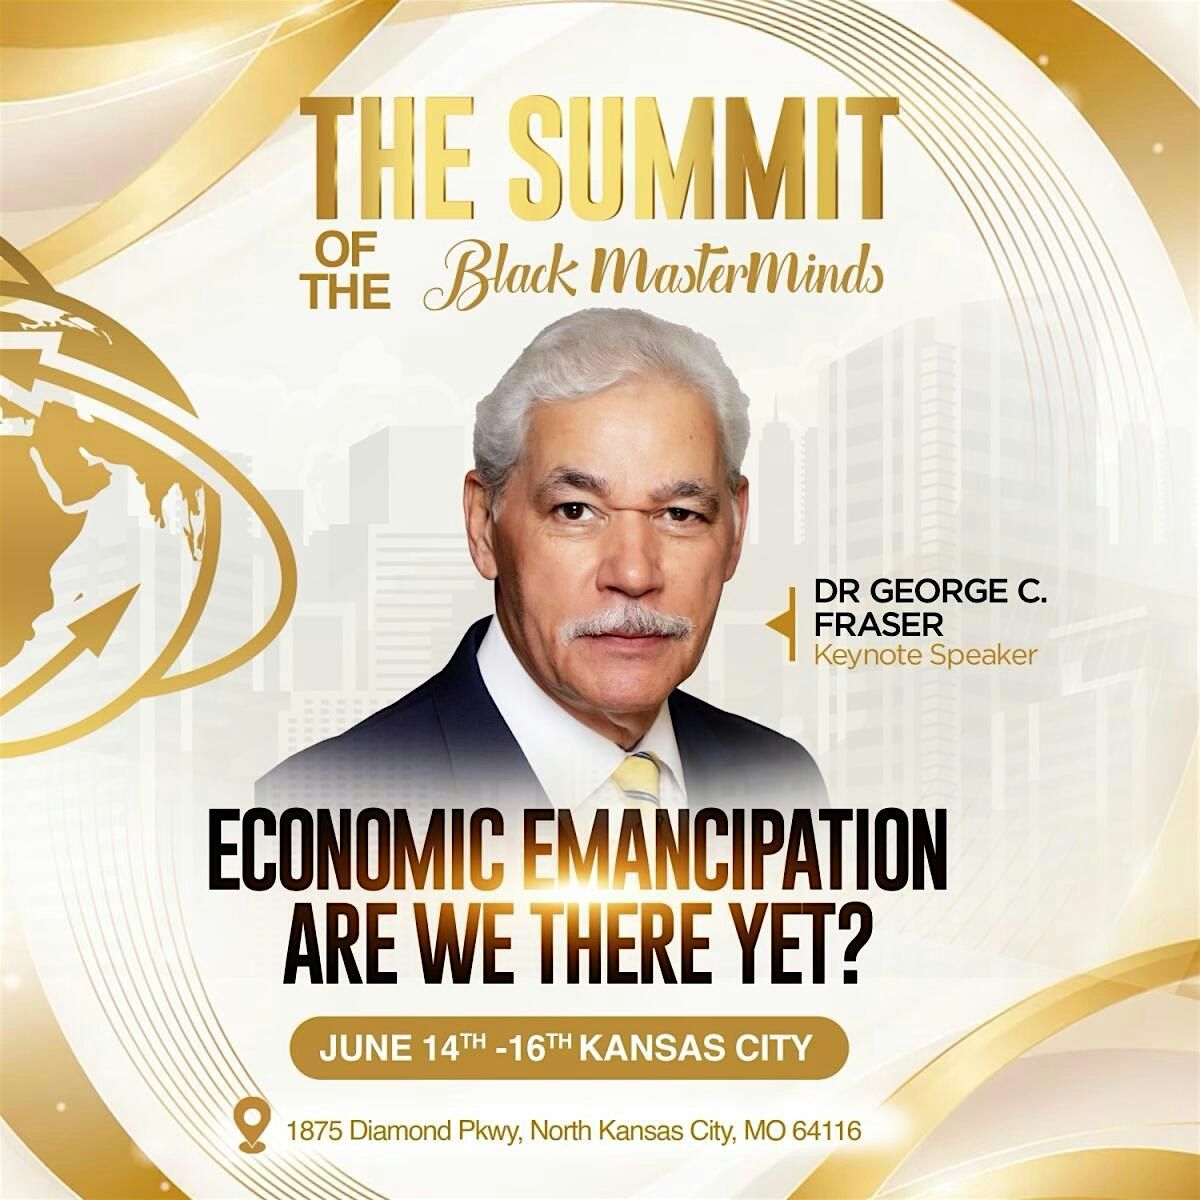 Dr George Fraser Keynote Speaker Summit of The Black MasterMinds